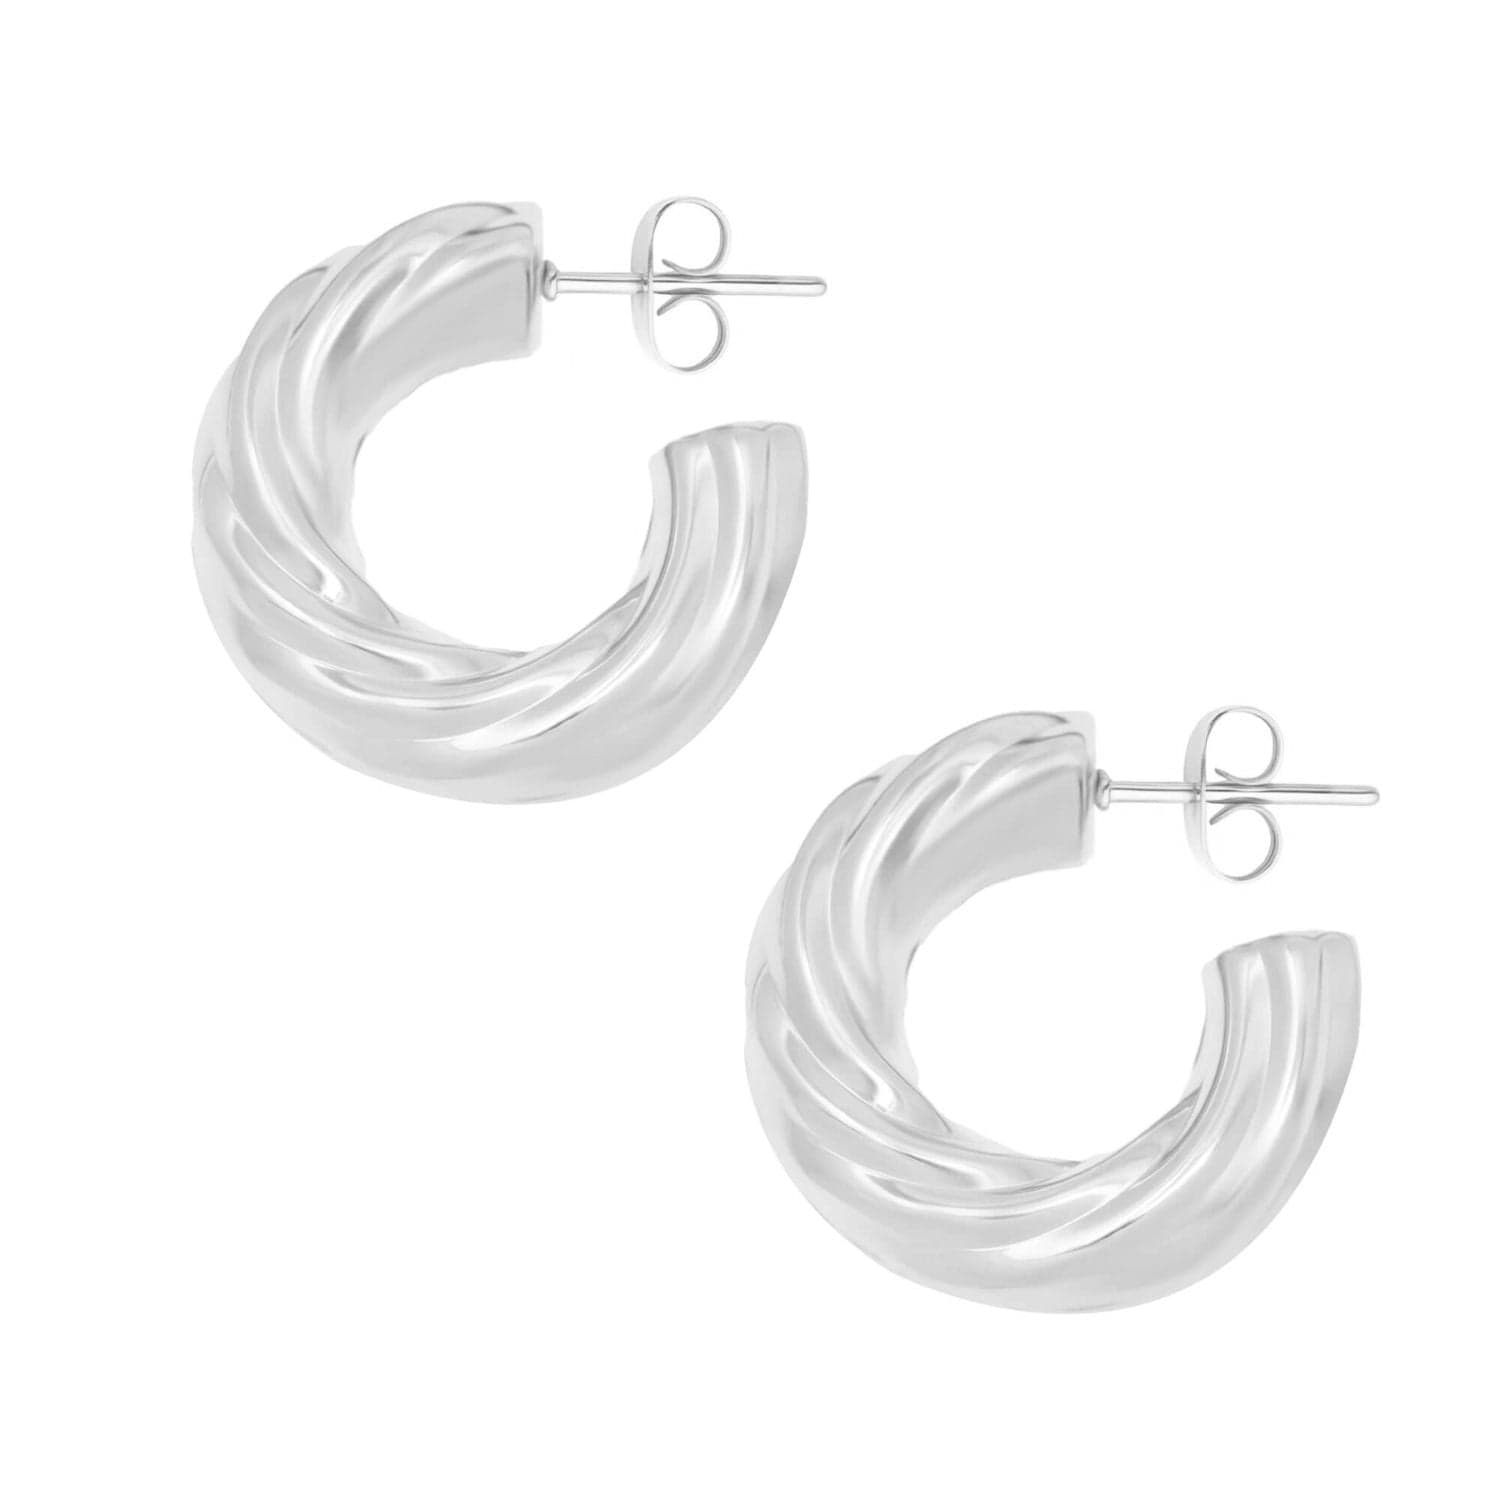 BohoMoon Stainless Steel Claudette Hoop Earrings Silver